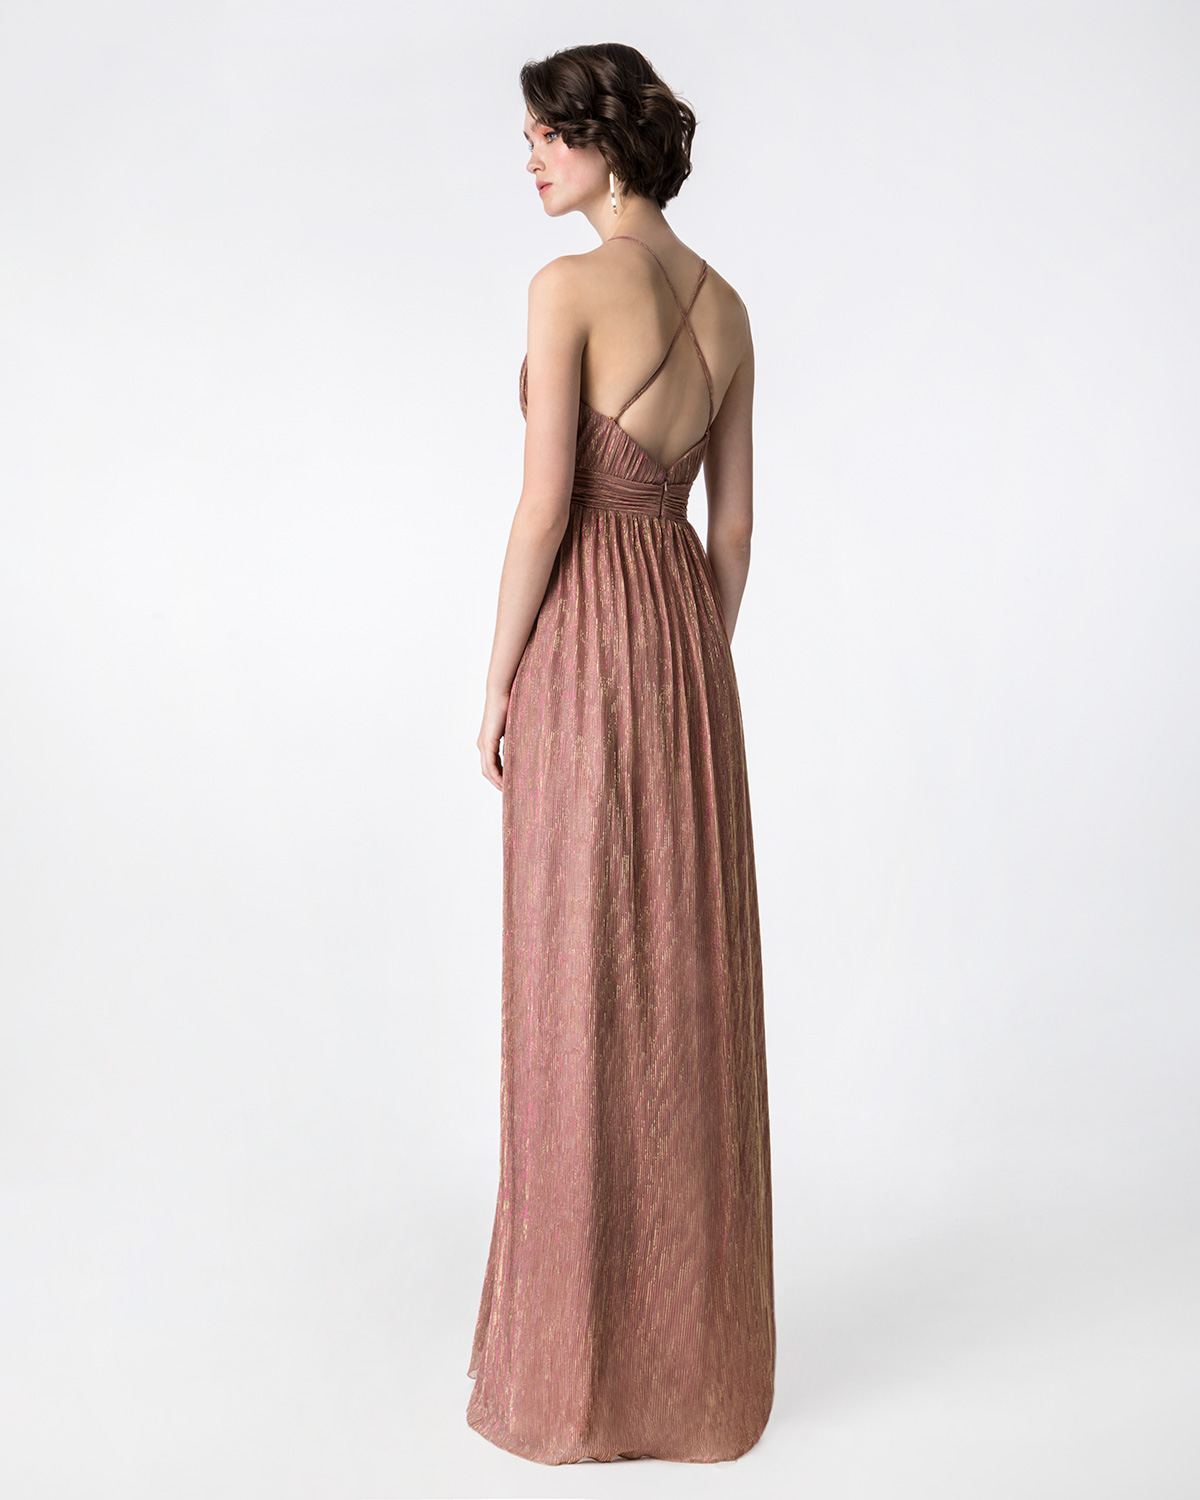 Κοκτέιλ Φορέματα / Μακρύ φόρεμα πλισέ από lurex με ντραπέ ζώνη και μπούστο